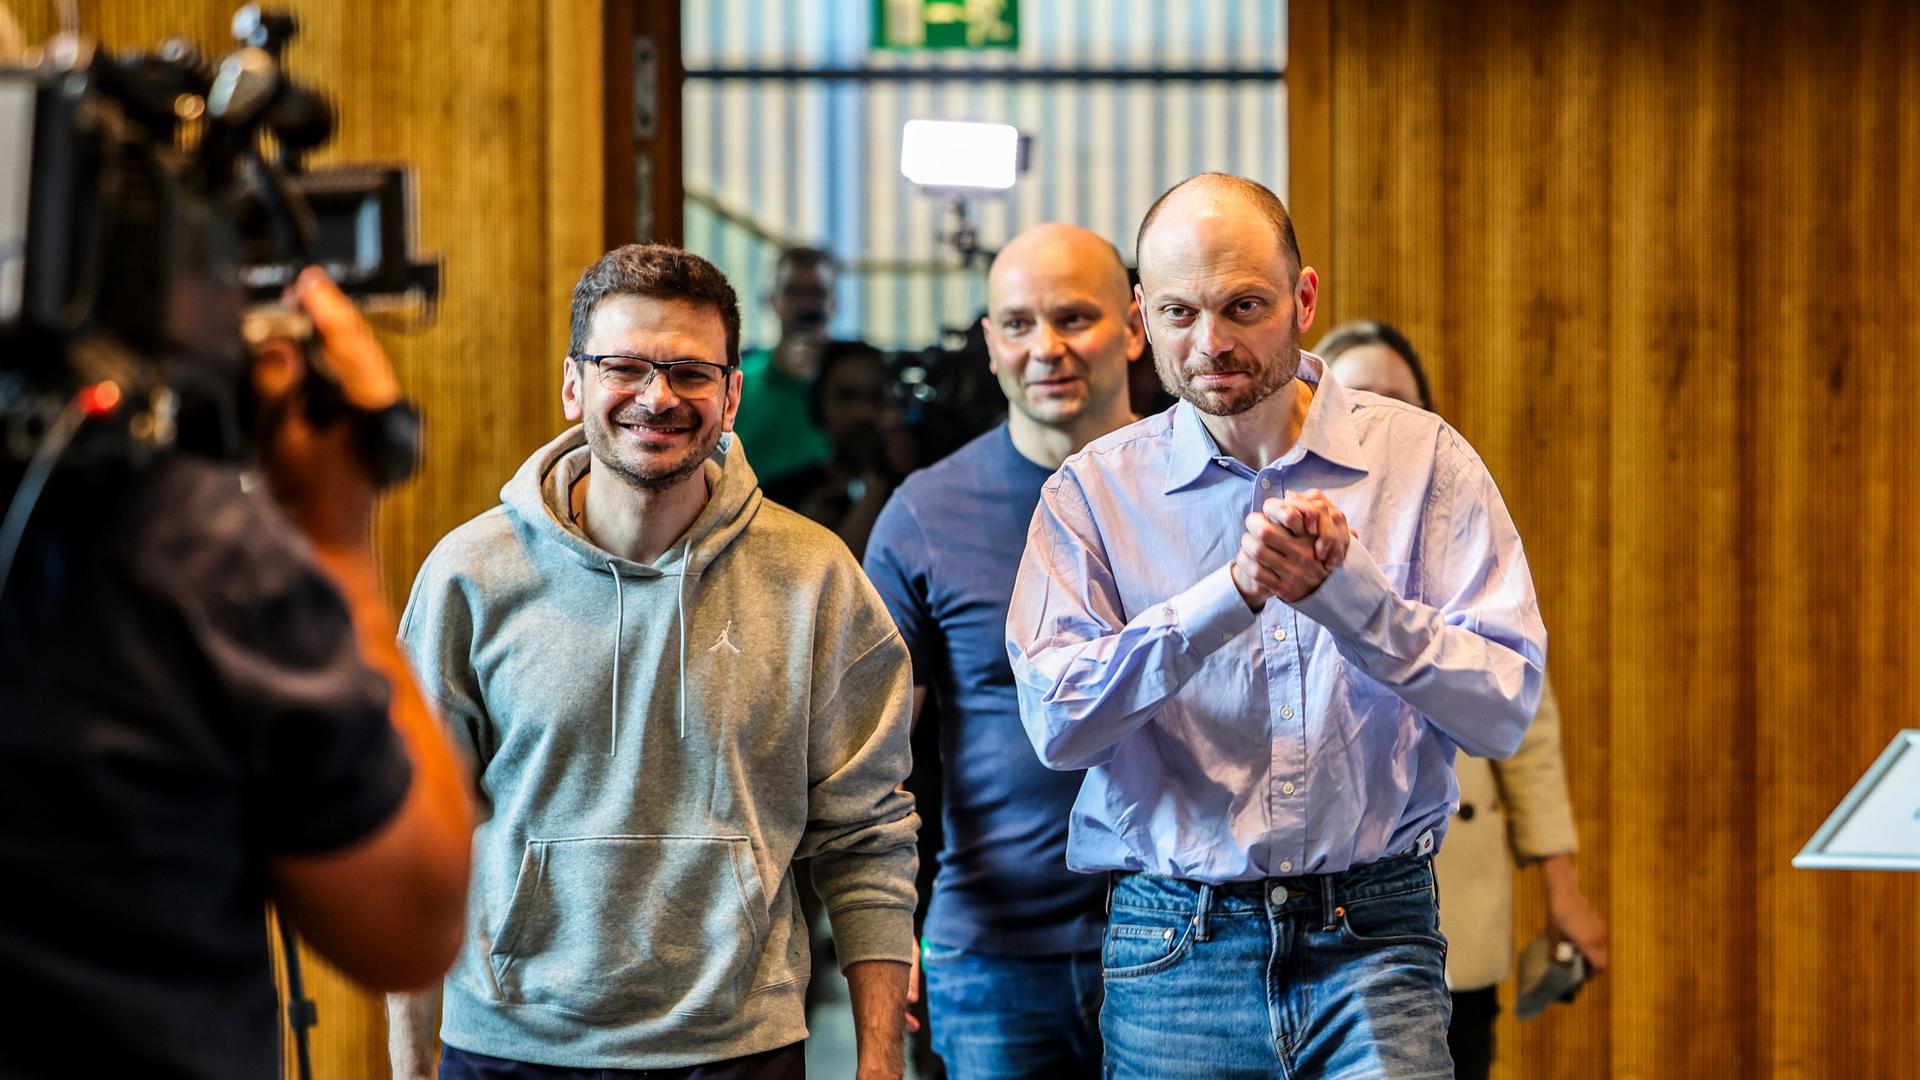 Ilja Jaschin (von links nach rechts), Andrej Piwowarow, Wladimir Kara-Mursa kommen zur Pressekonferenz in Bonn und gehen durch eine Tür. Links im Bild ein Kameramann. 